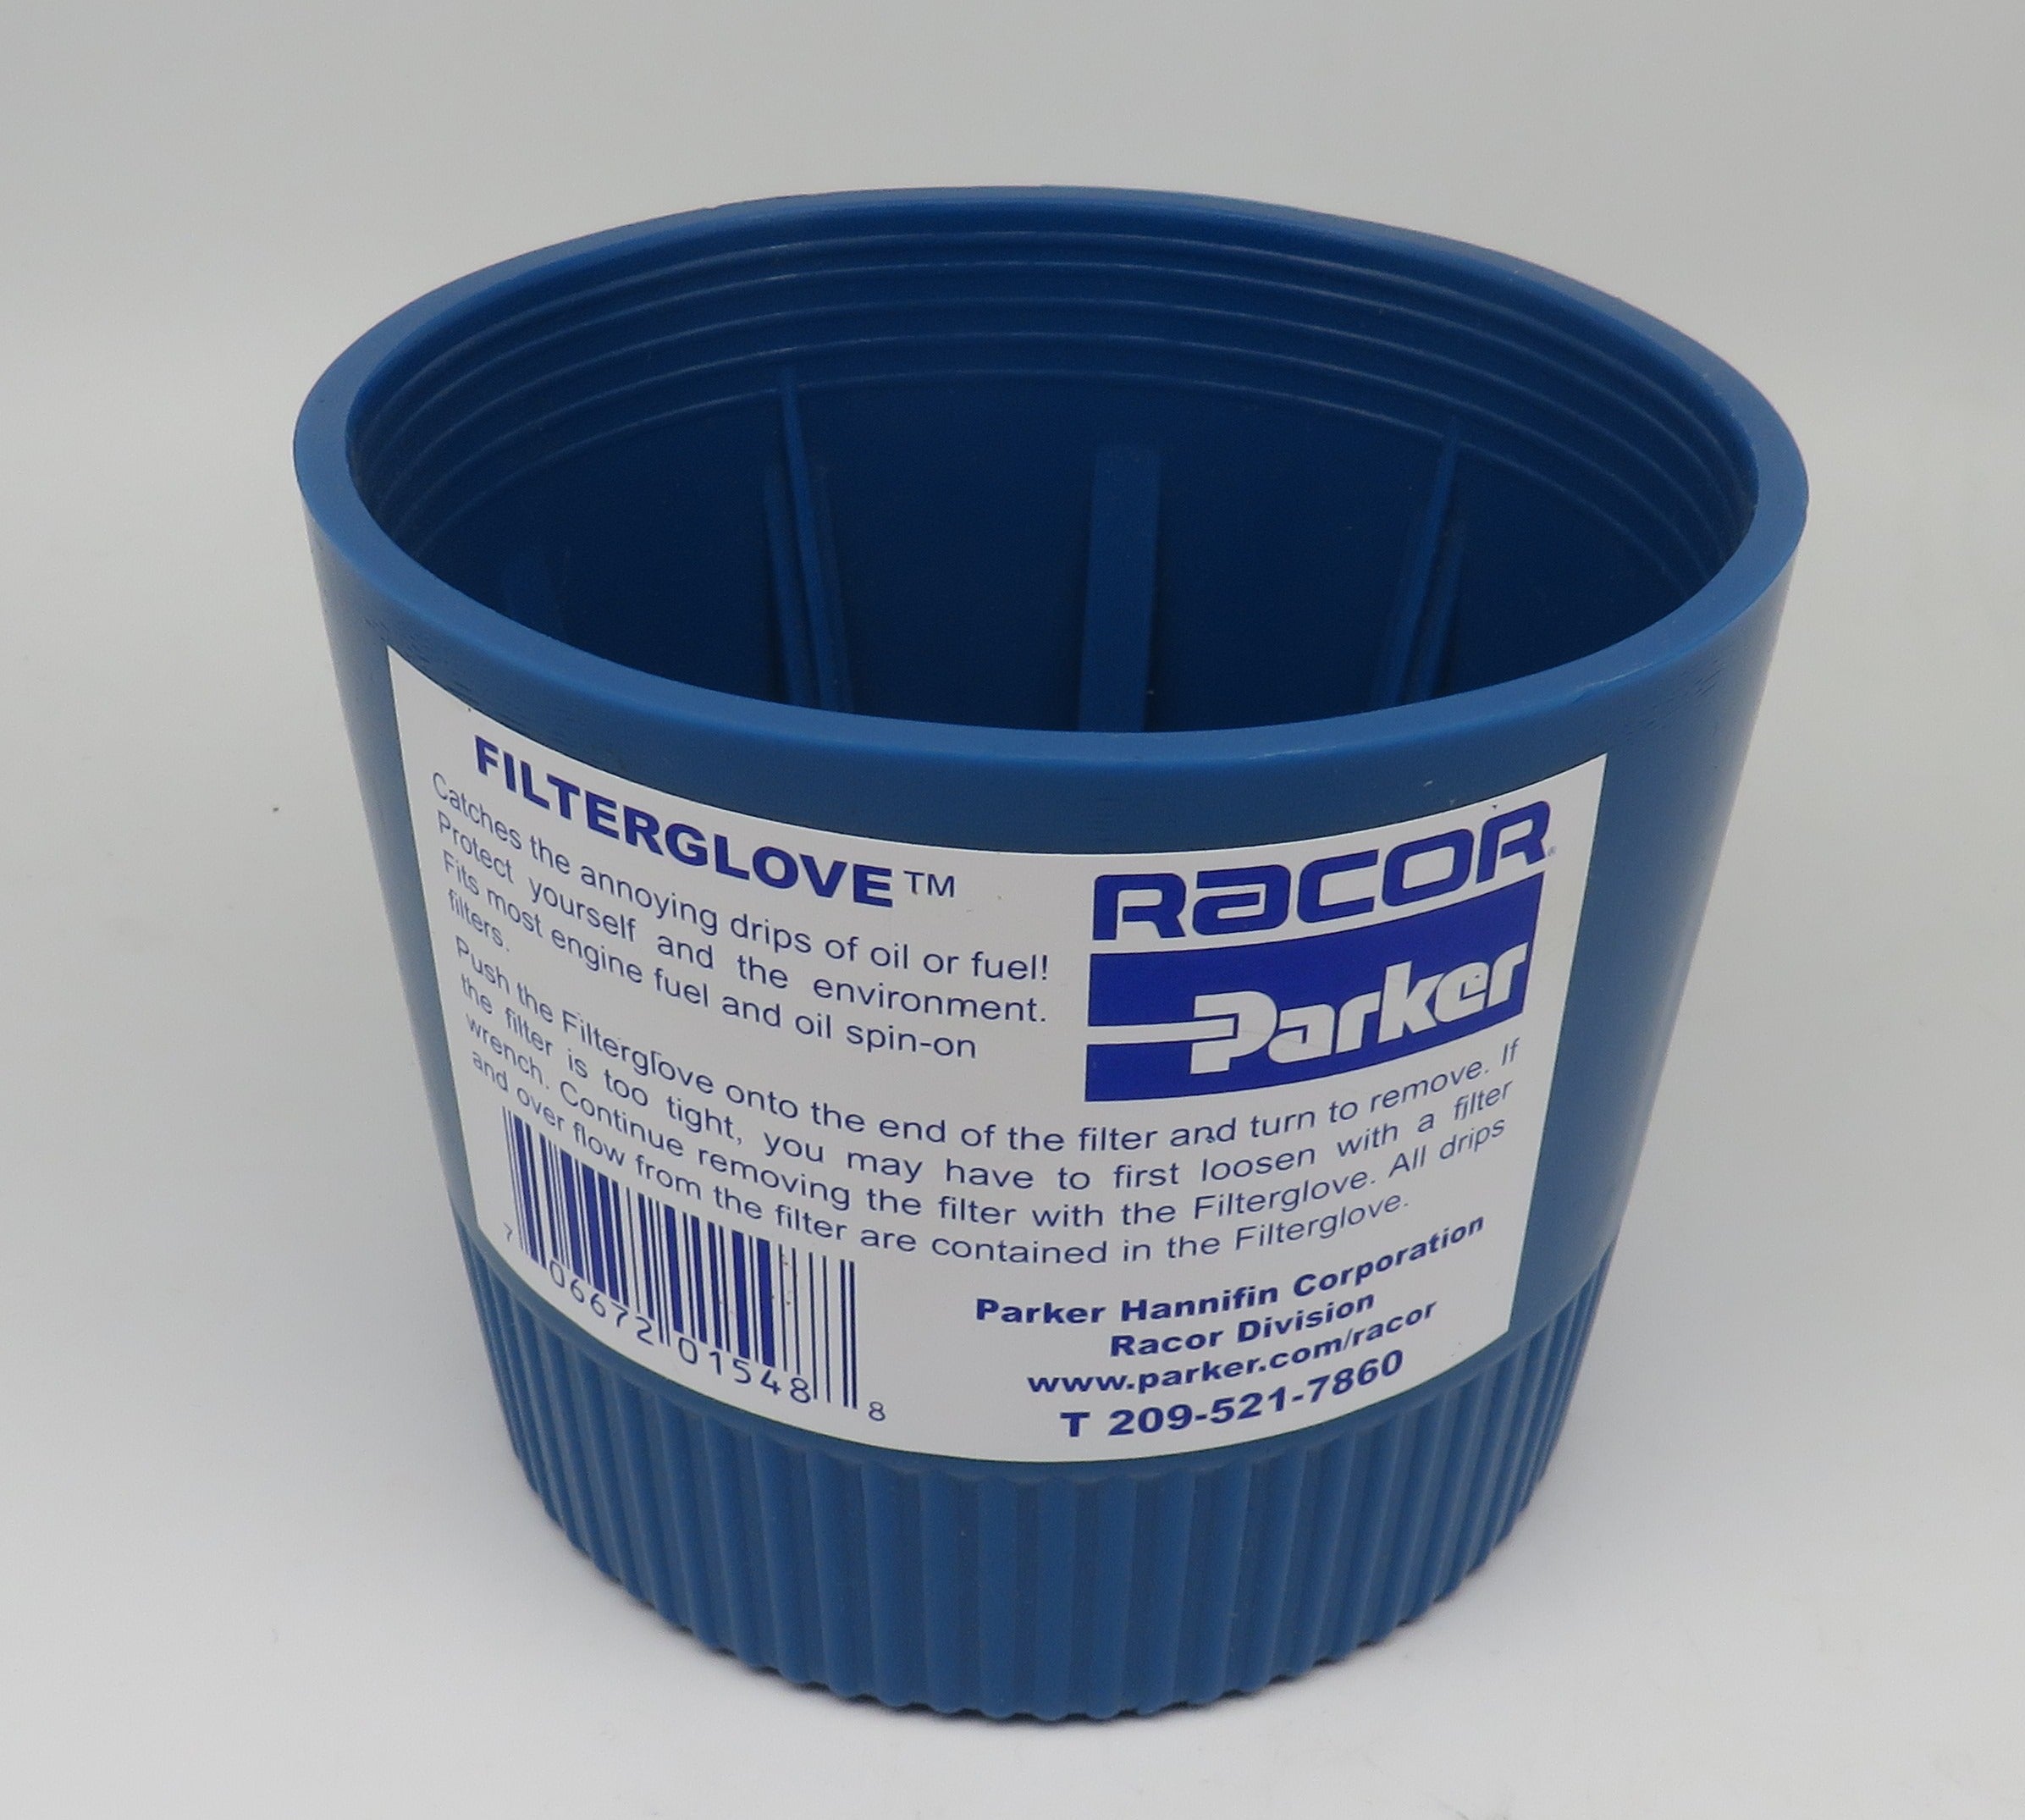 Racor Parker-Hannifin Filter Glove